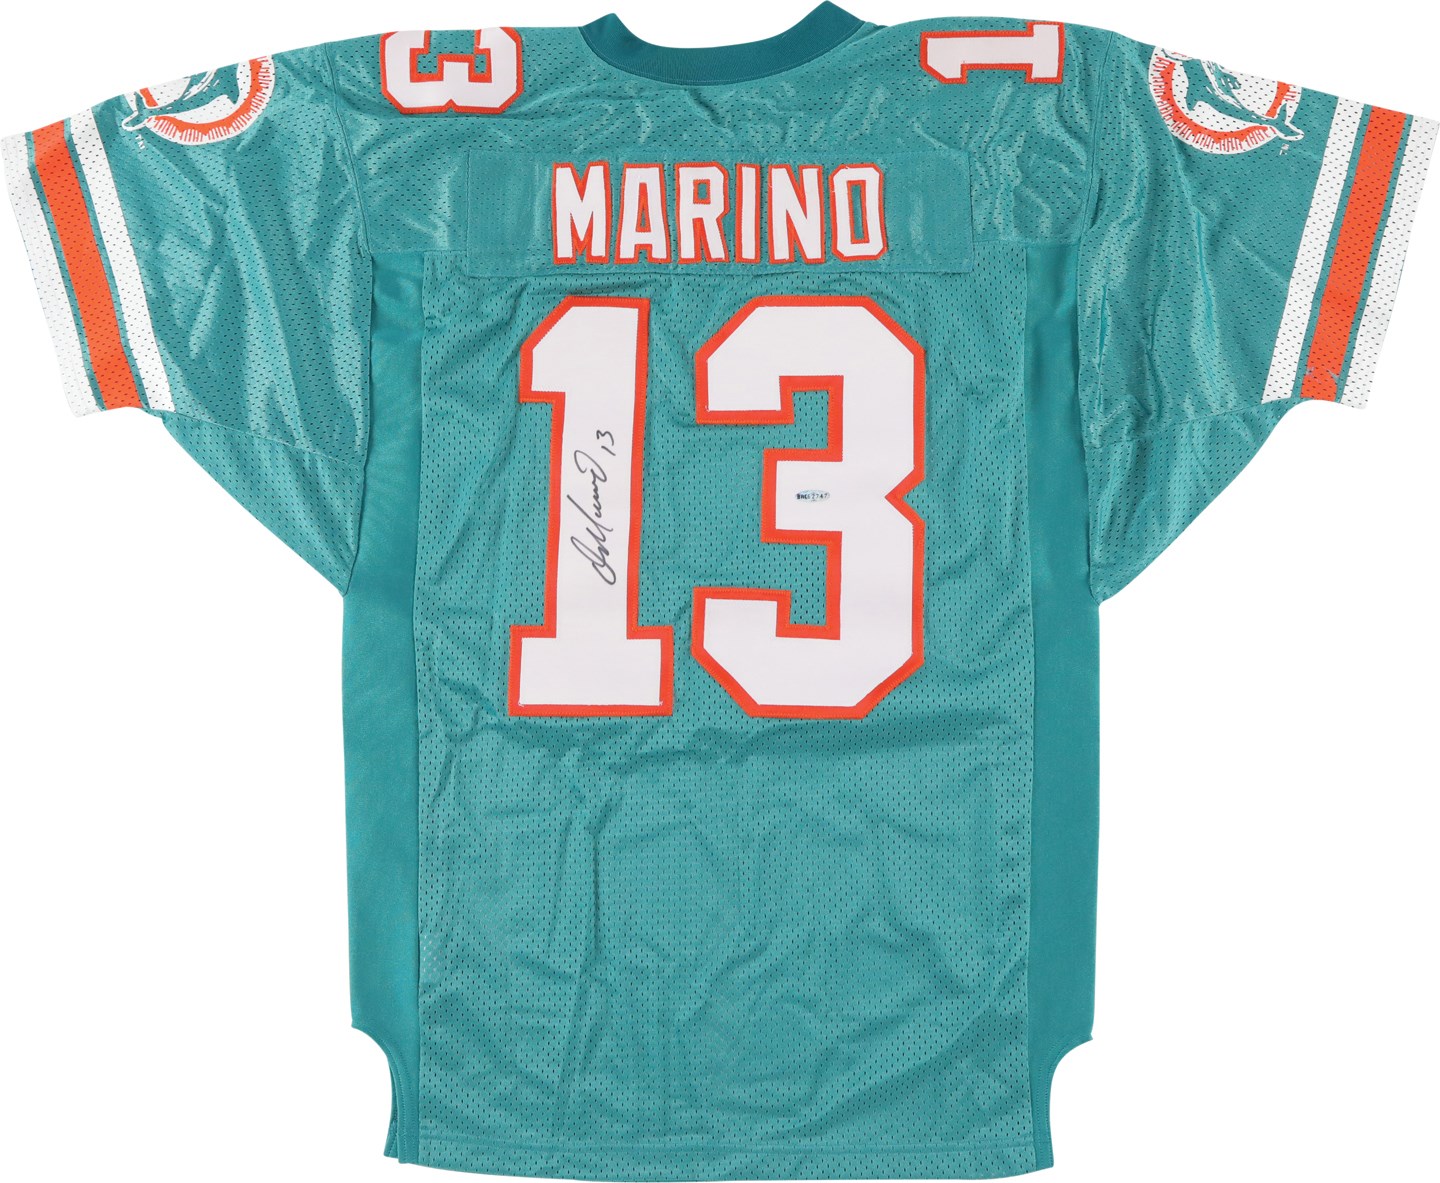 Football - Dan Marino Signed Miami Dolphins Jersey (UDA)